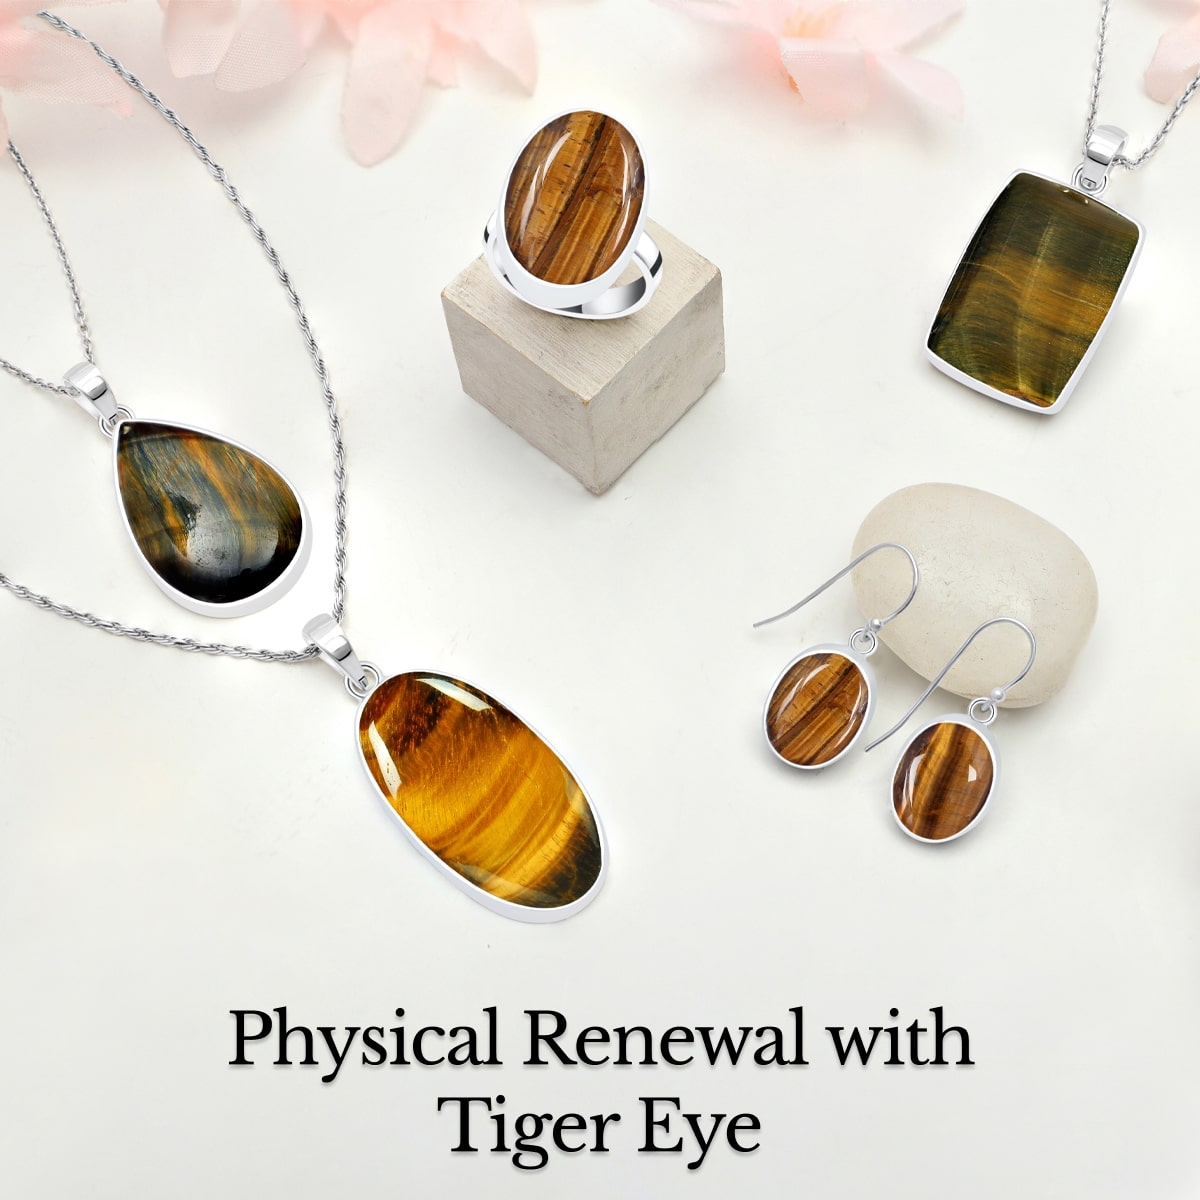 Tiger Eye Physical Healing properties